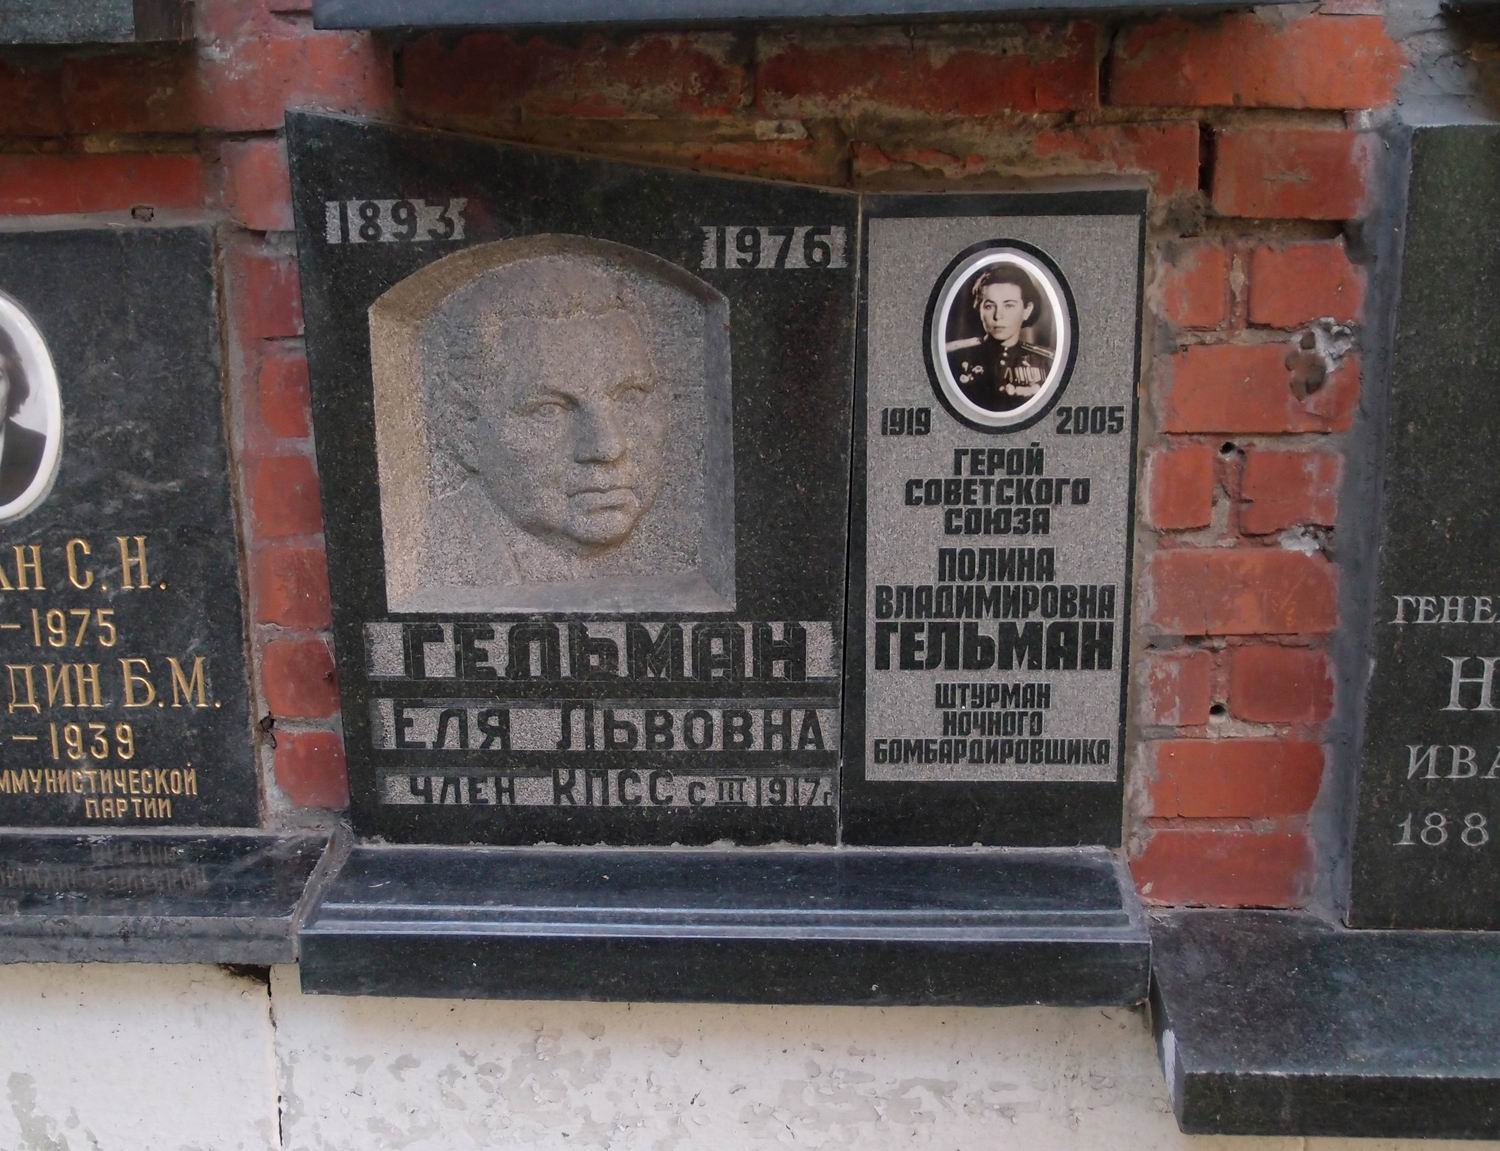 Плита на нише Гельман П.В. (1919–2005), на Новодевичьем кладбище (колумбарий [134]–37–4).